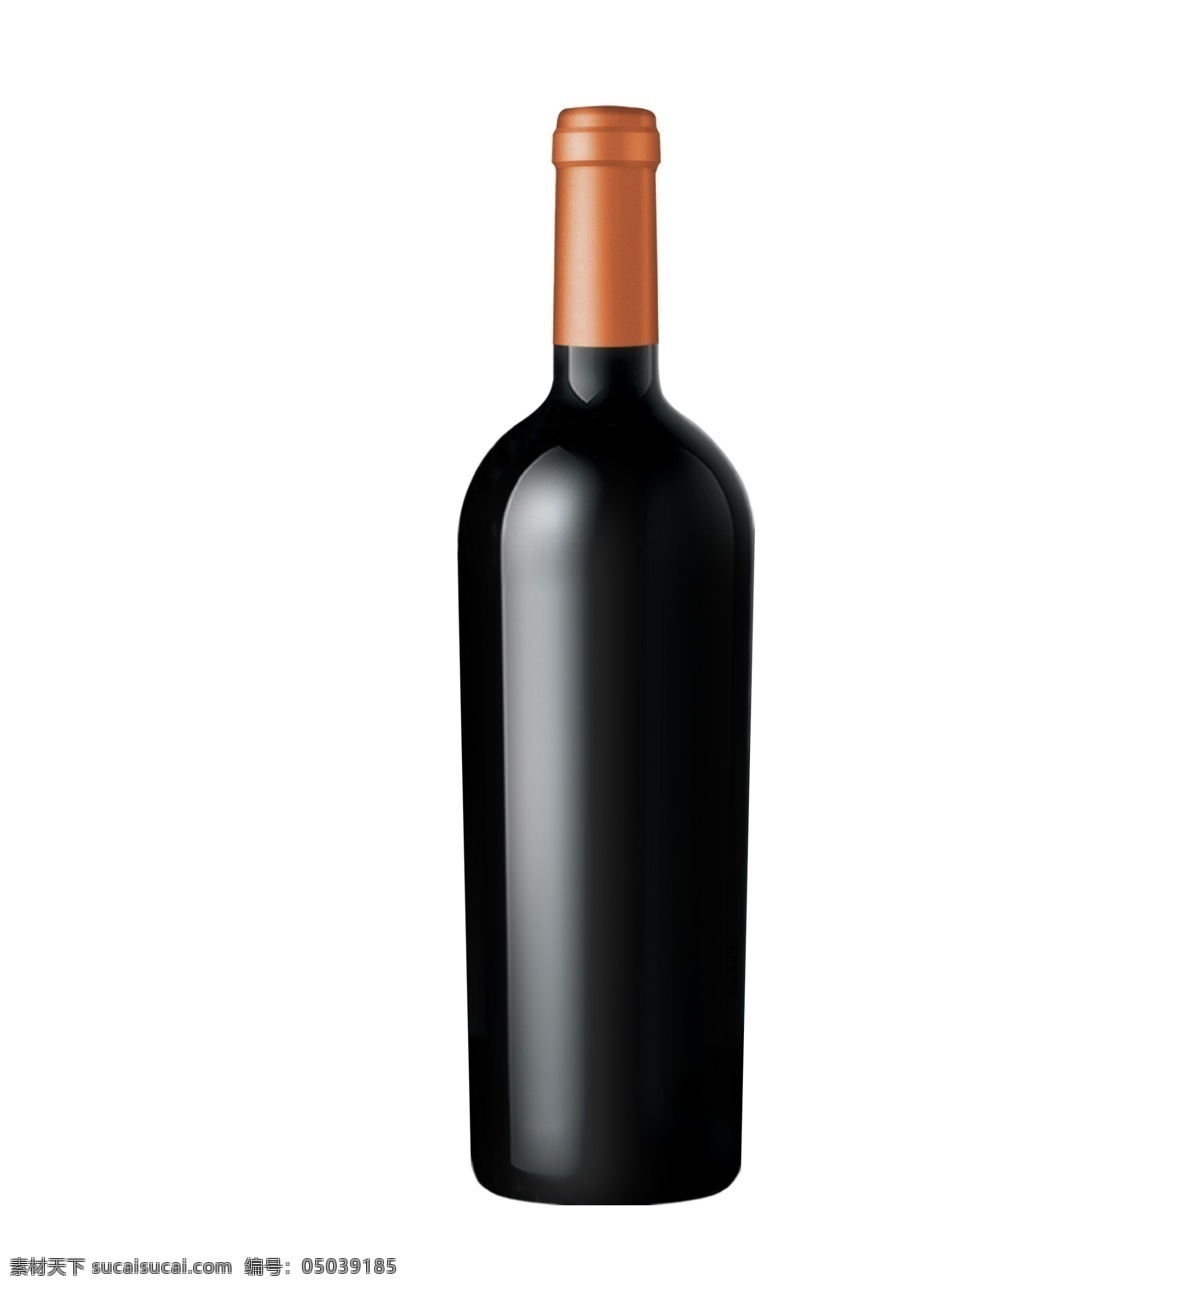 葡萄酒 红酒 高 樽 瓶 高樽瓶 包装 酒素材白酒 包装设计